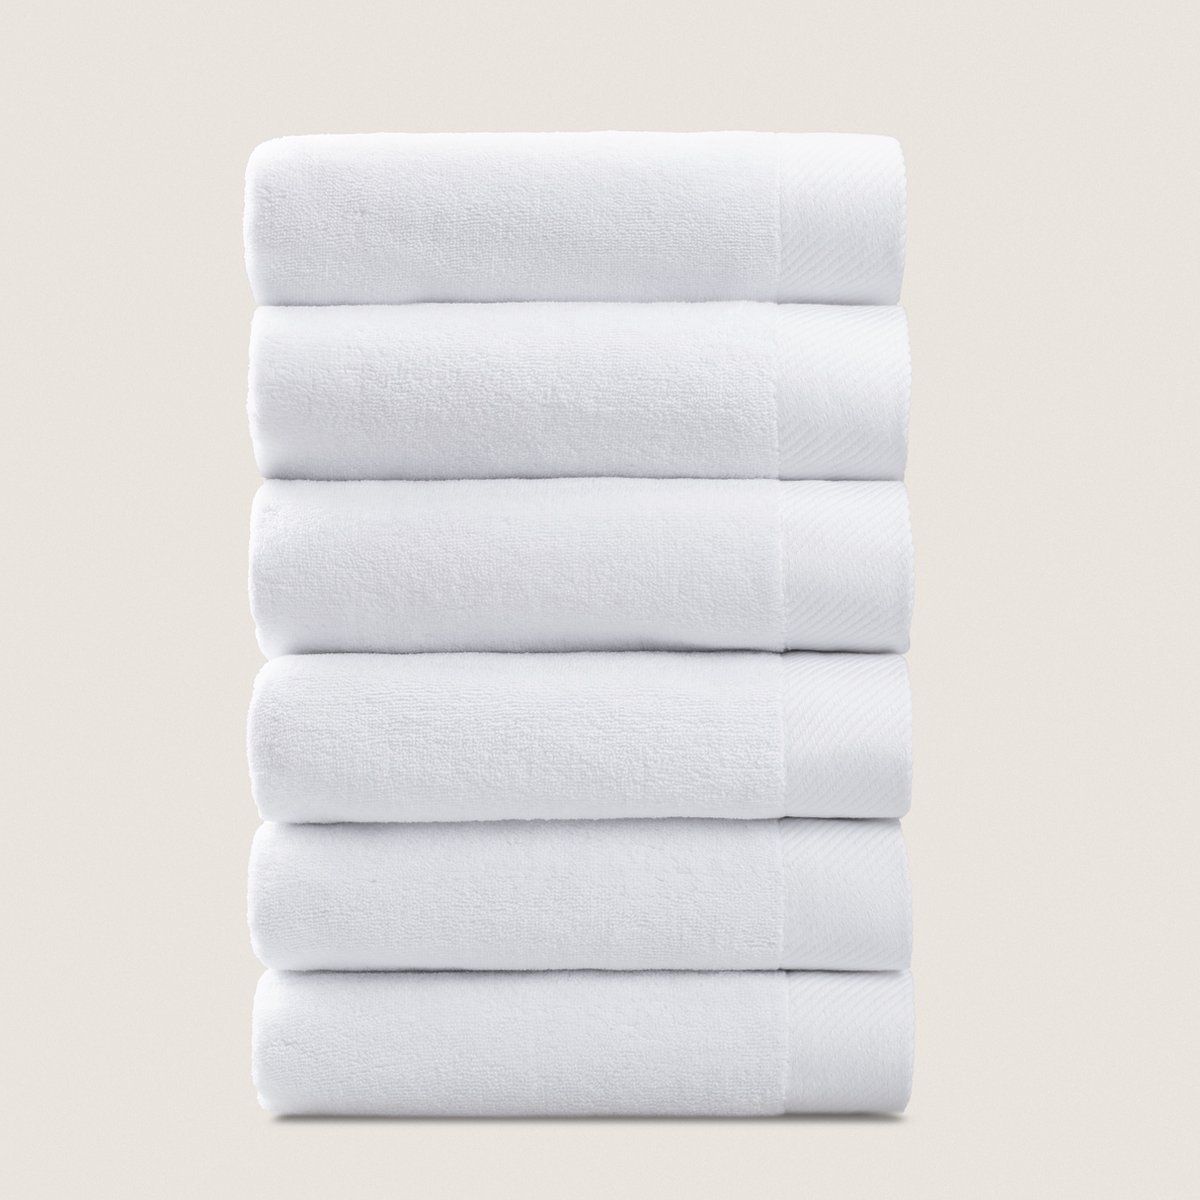 PandaHome - Hotelkwaliteit Handdoeken set - 6 delig - 6 Handdoeken 50x100 cm - 100% Micro-Katoen - Handdoeken Wit